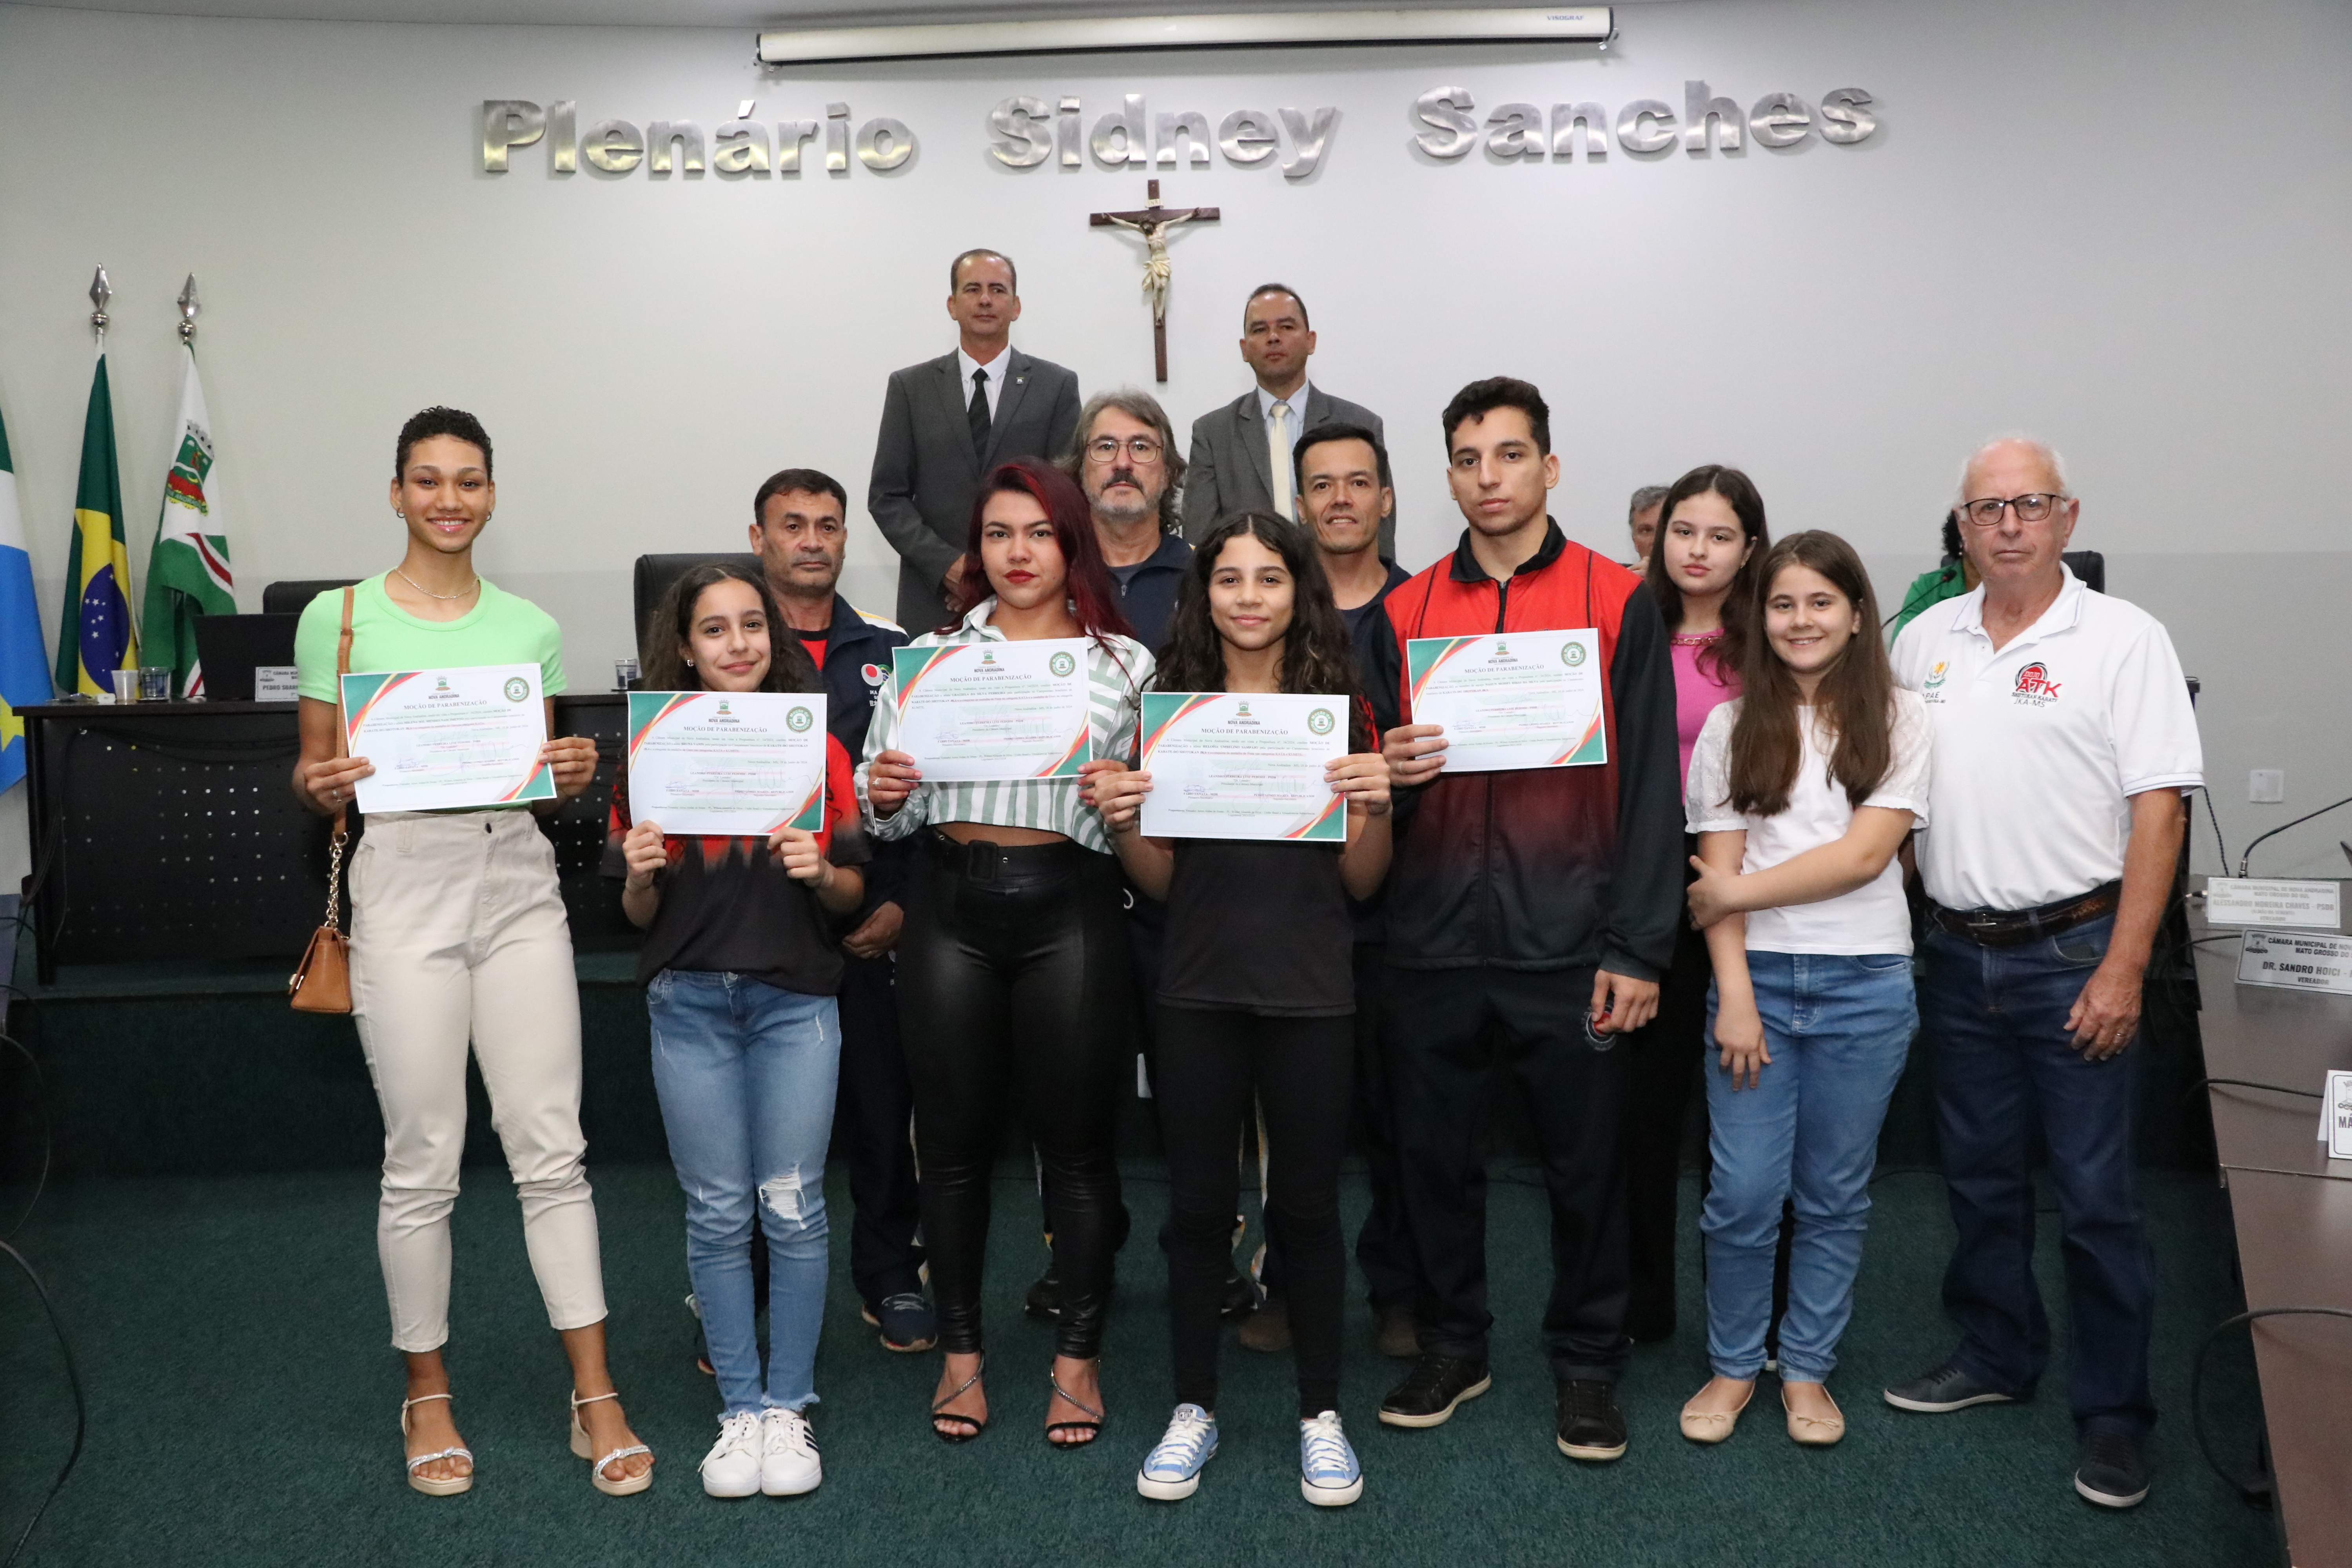 Medalhistas e participantes do Campeonato Brasileiro de Karate recebem homenagem 